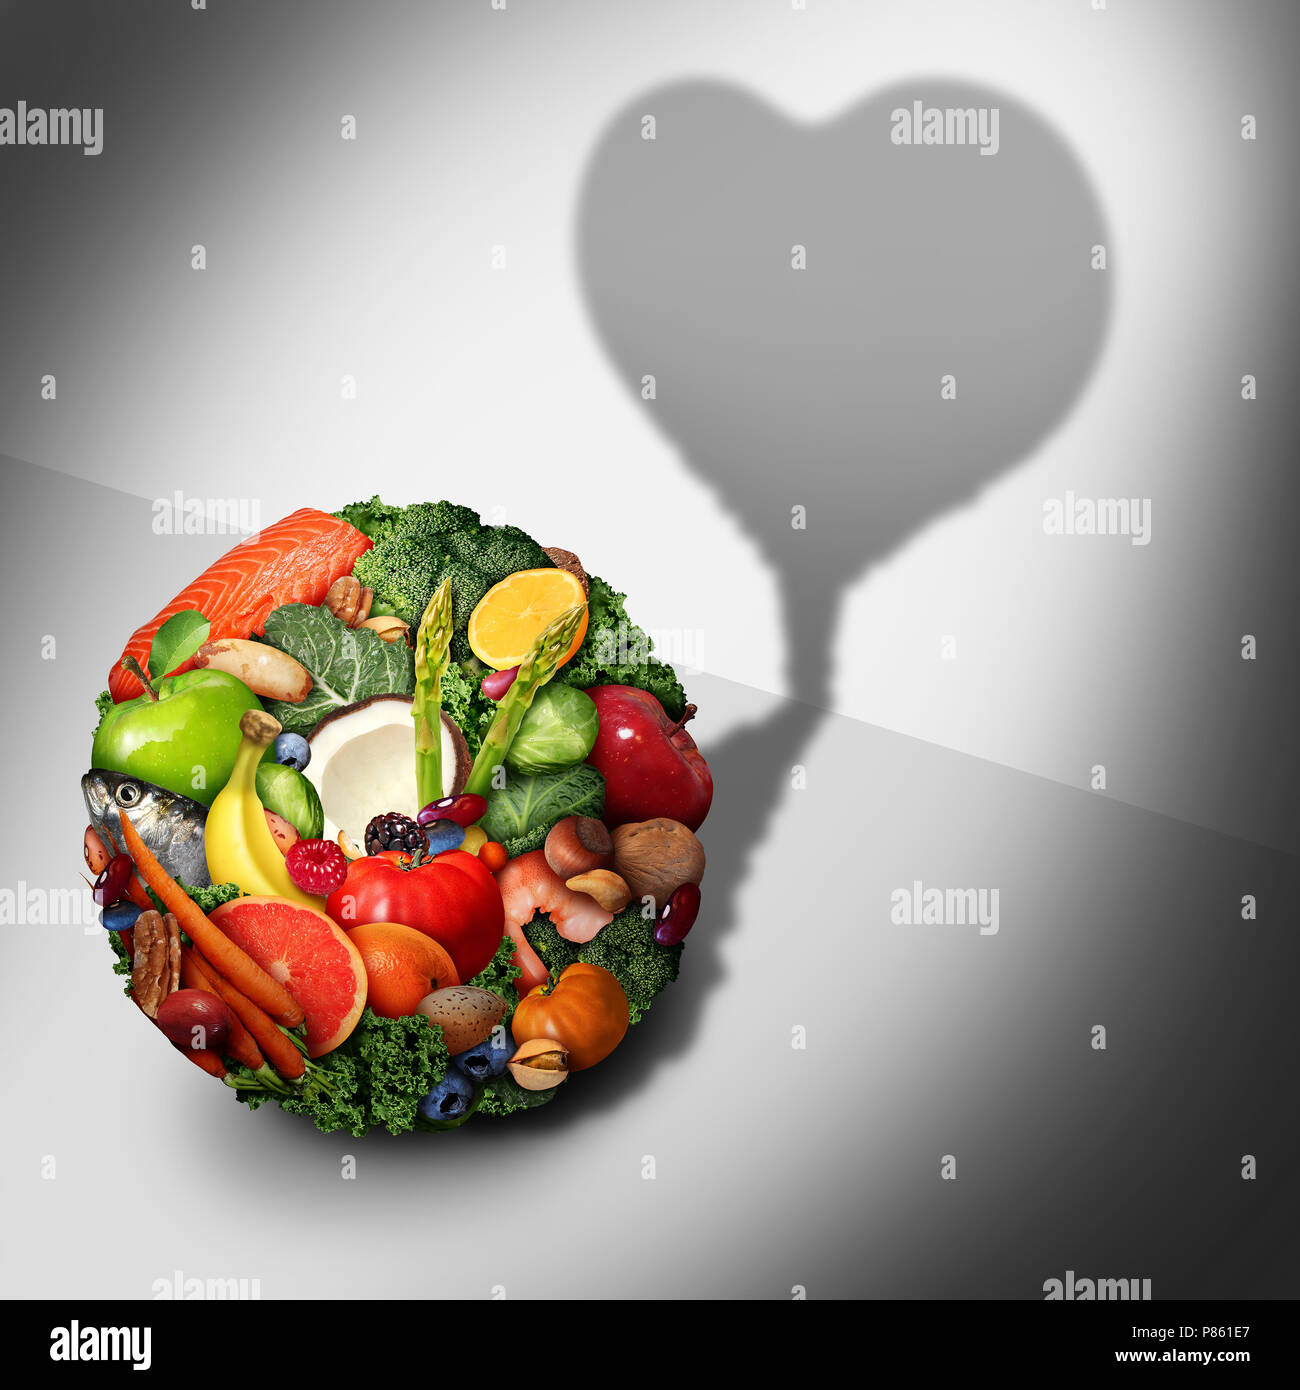 Salud del corazón los ingredientes de los alimentos como una dieta, nutrición cardiovascular concepto en 3D de una ilustración de estilo. Foto de stock